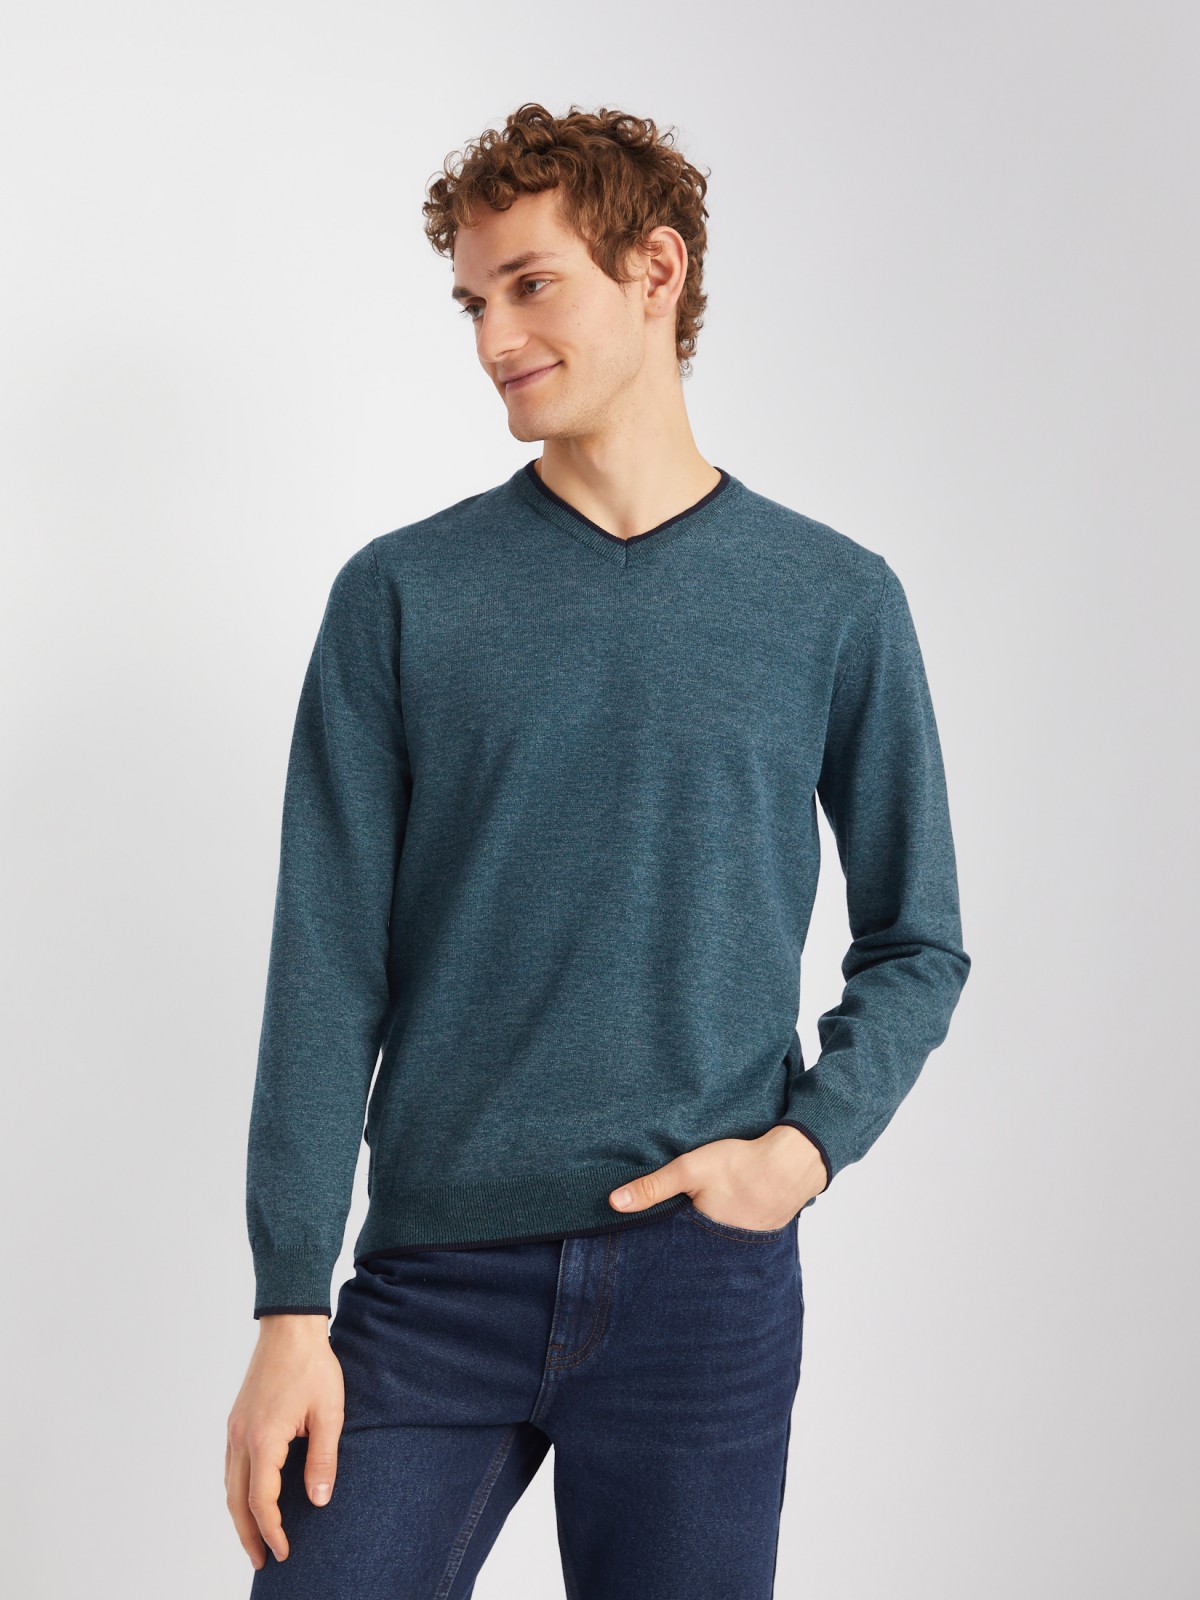 Тонкий трикотажный пуловер с длинным рукавом zolla 014116101082, цвет темно-бирюзовый, размер M - фото 4